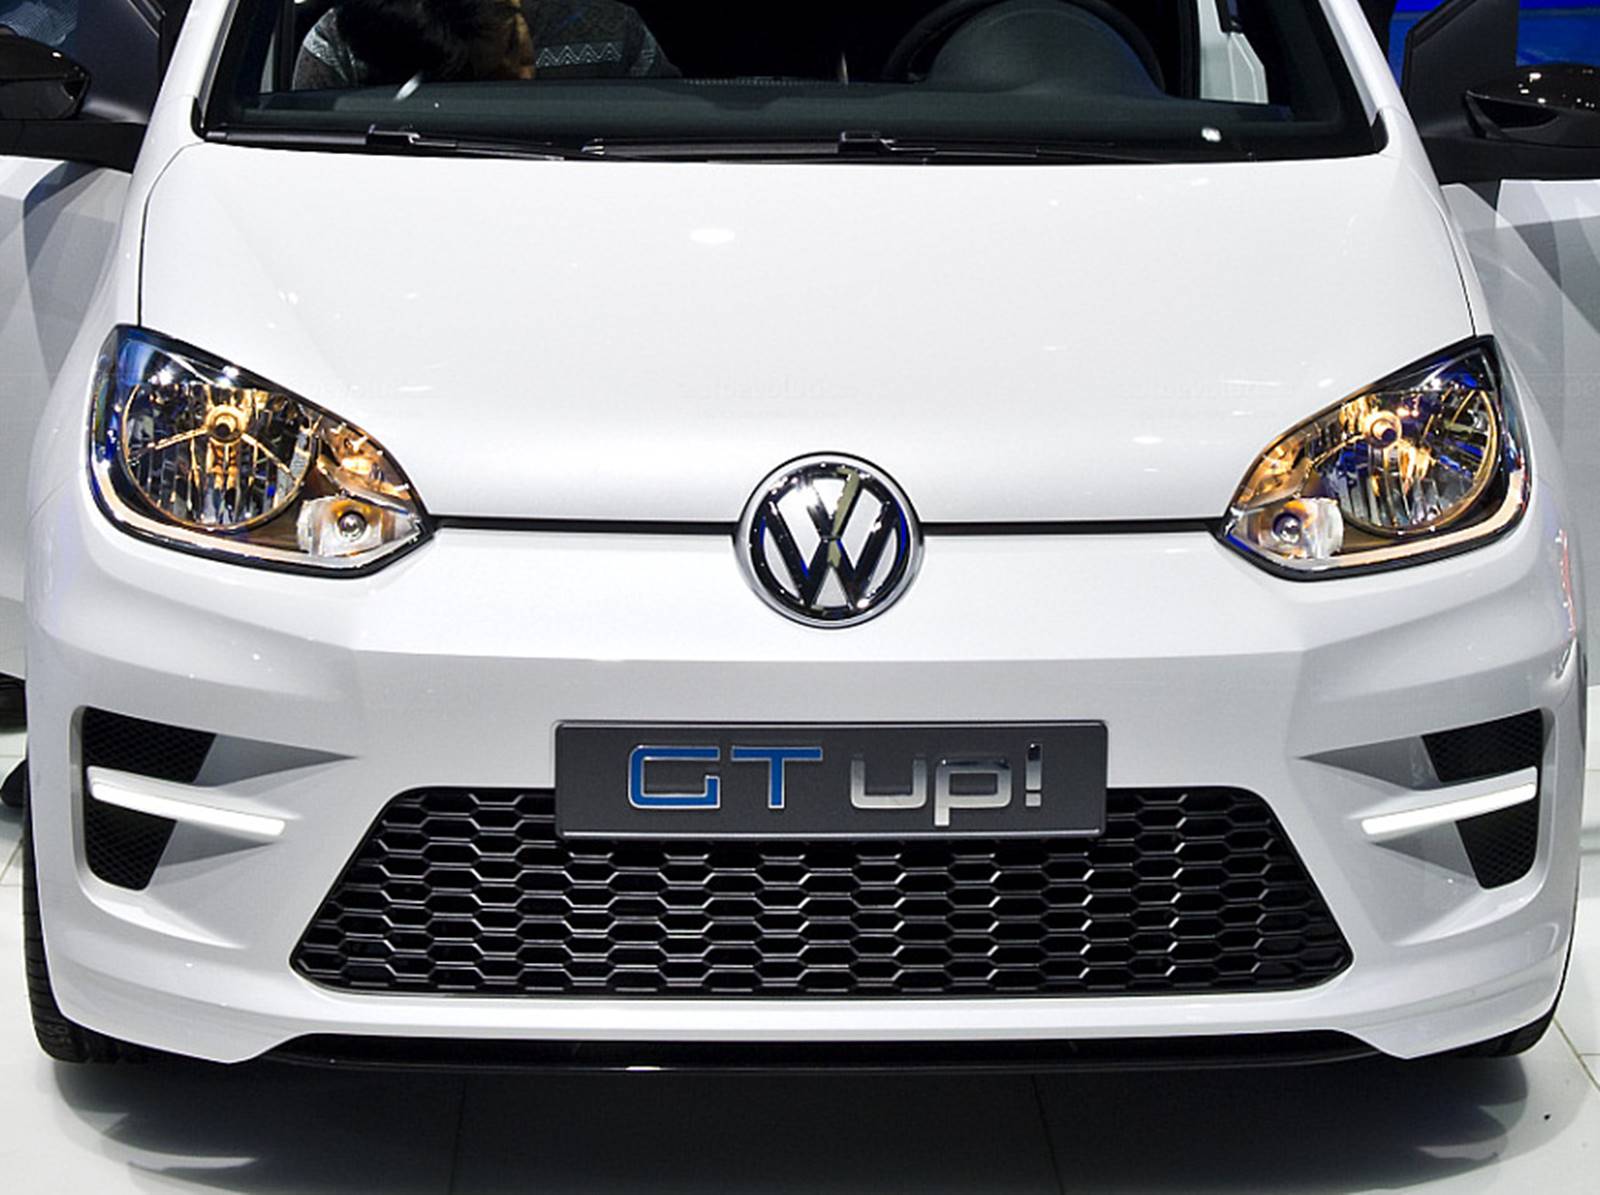 Volkswagen up! 2015 Turbo - interior